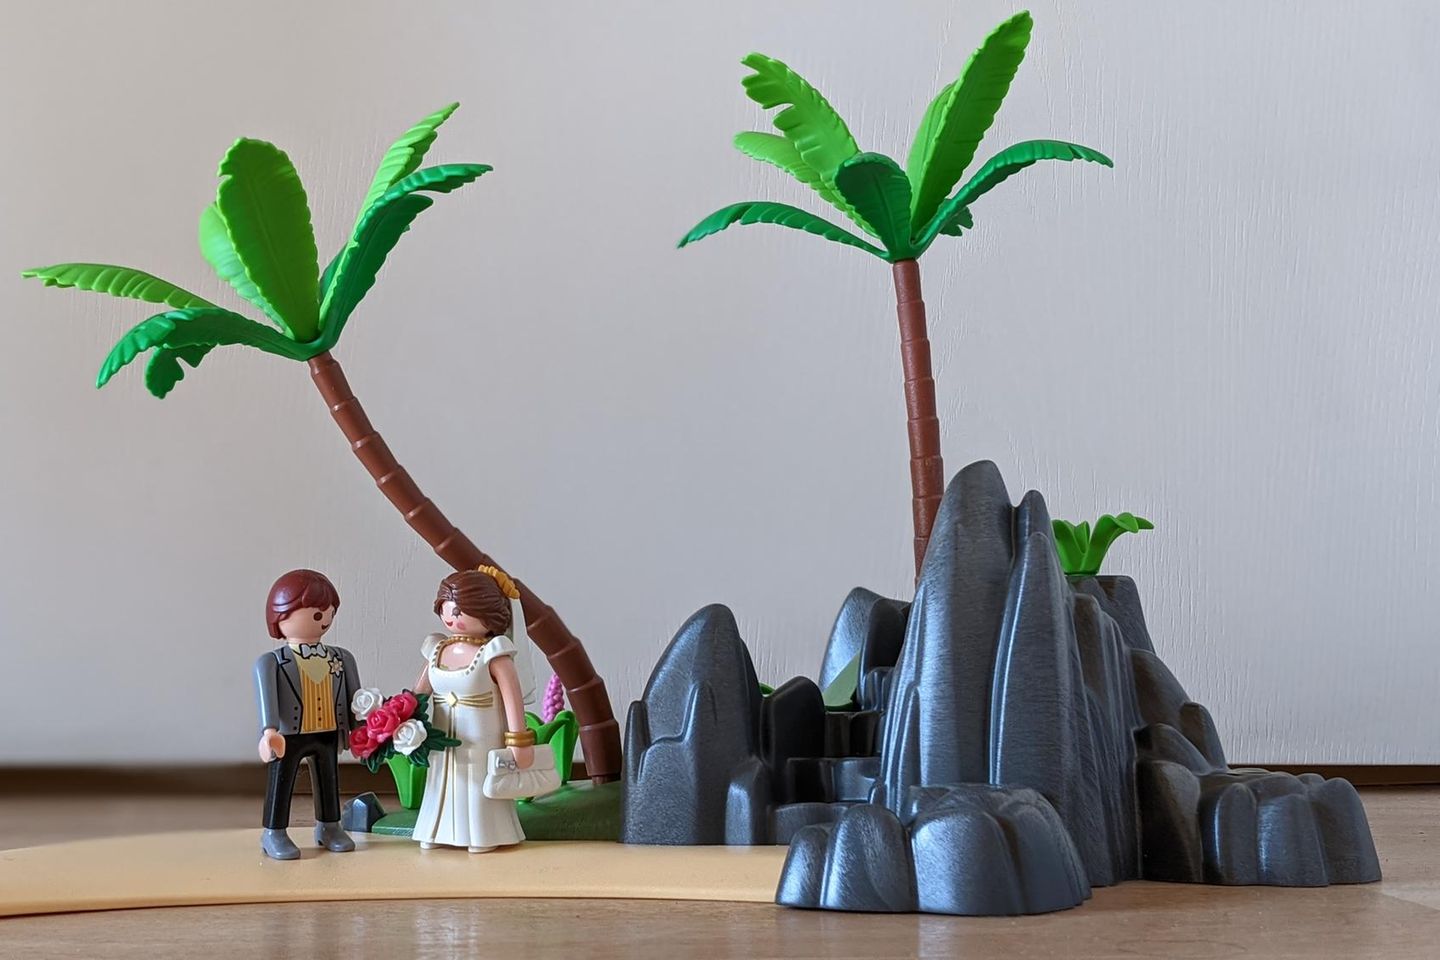 Alleine heiraten: Playmobil-Hochzeitspaar auf einer Insel